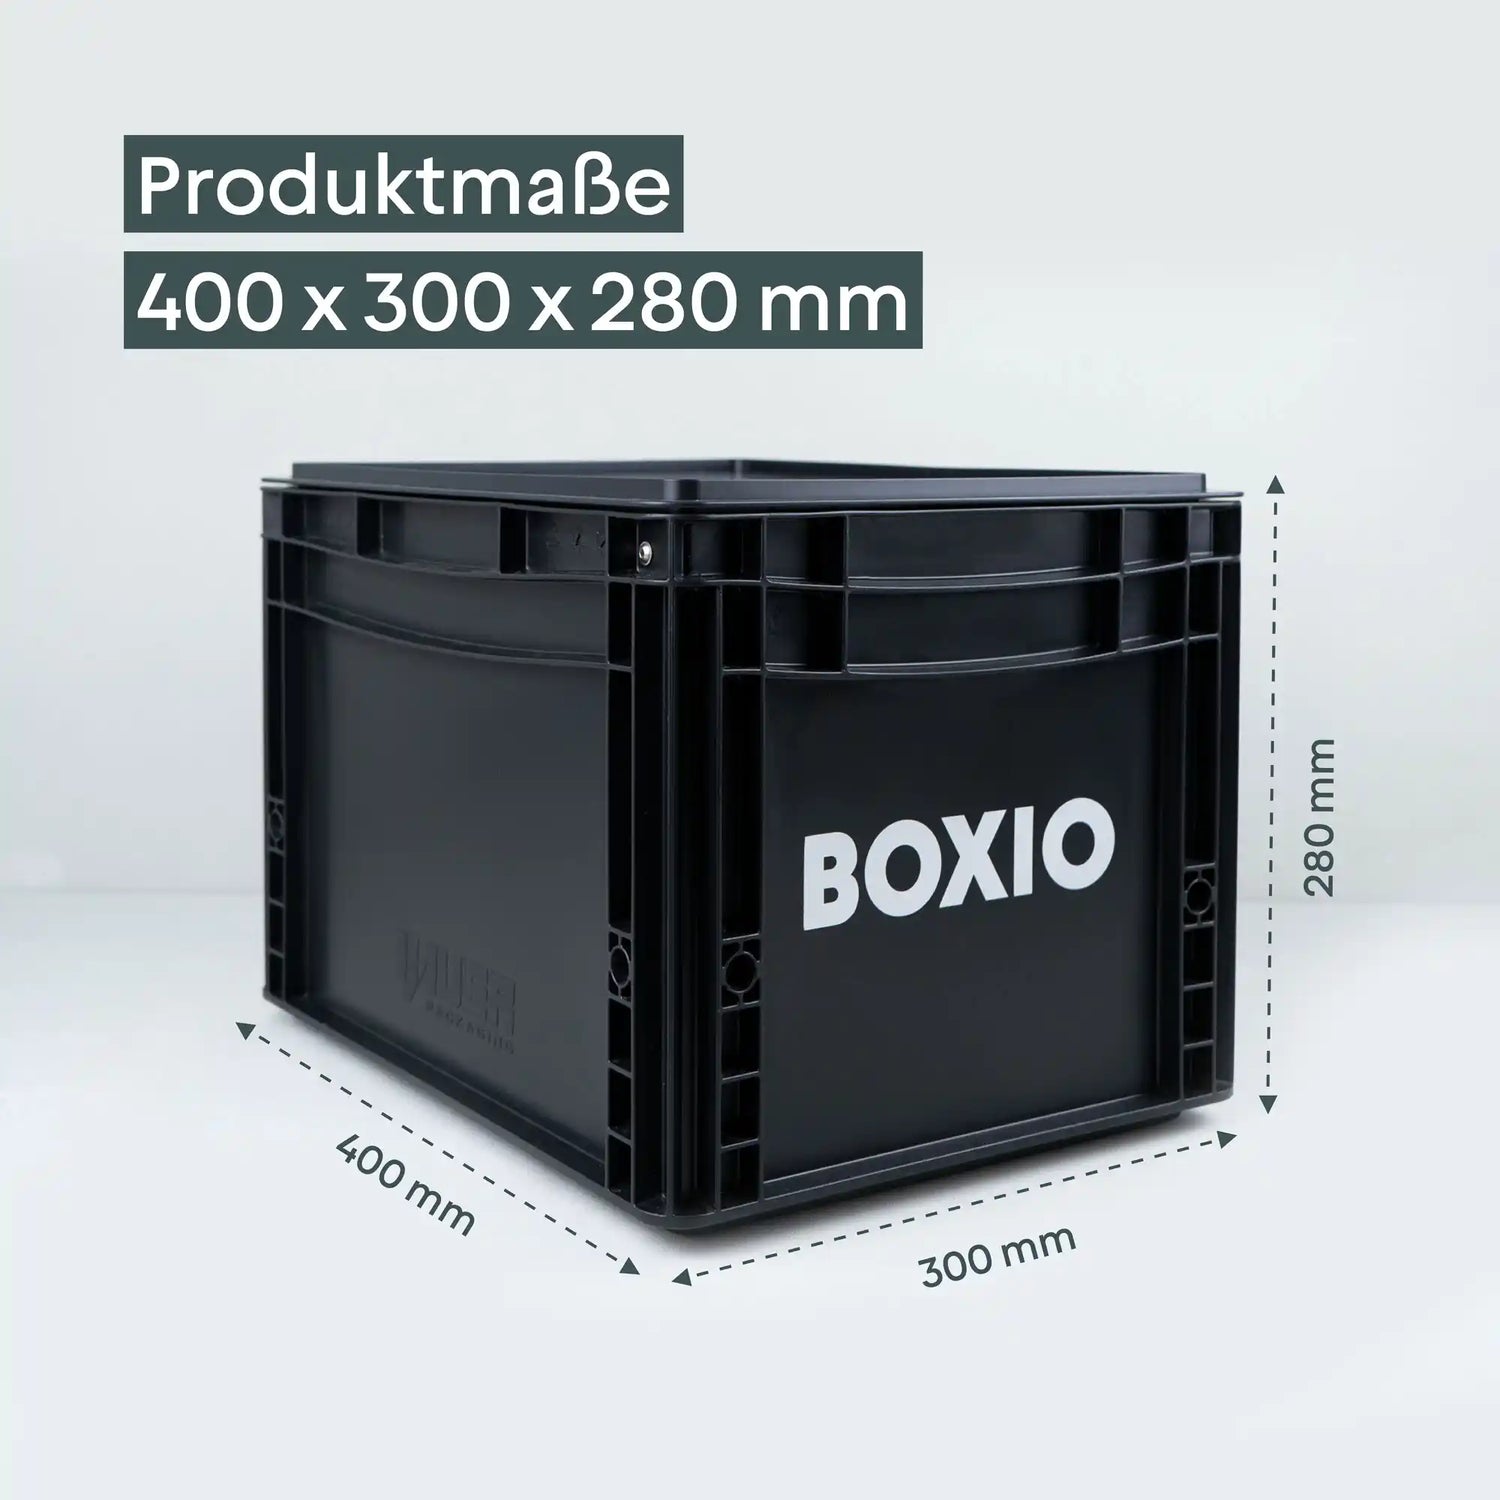 BOXIO - mobile Trenntoilette für Camper